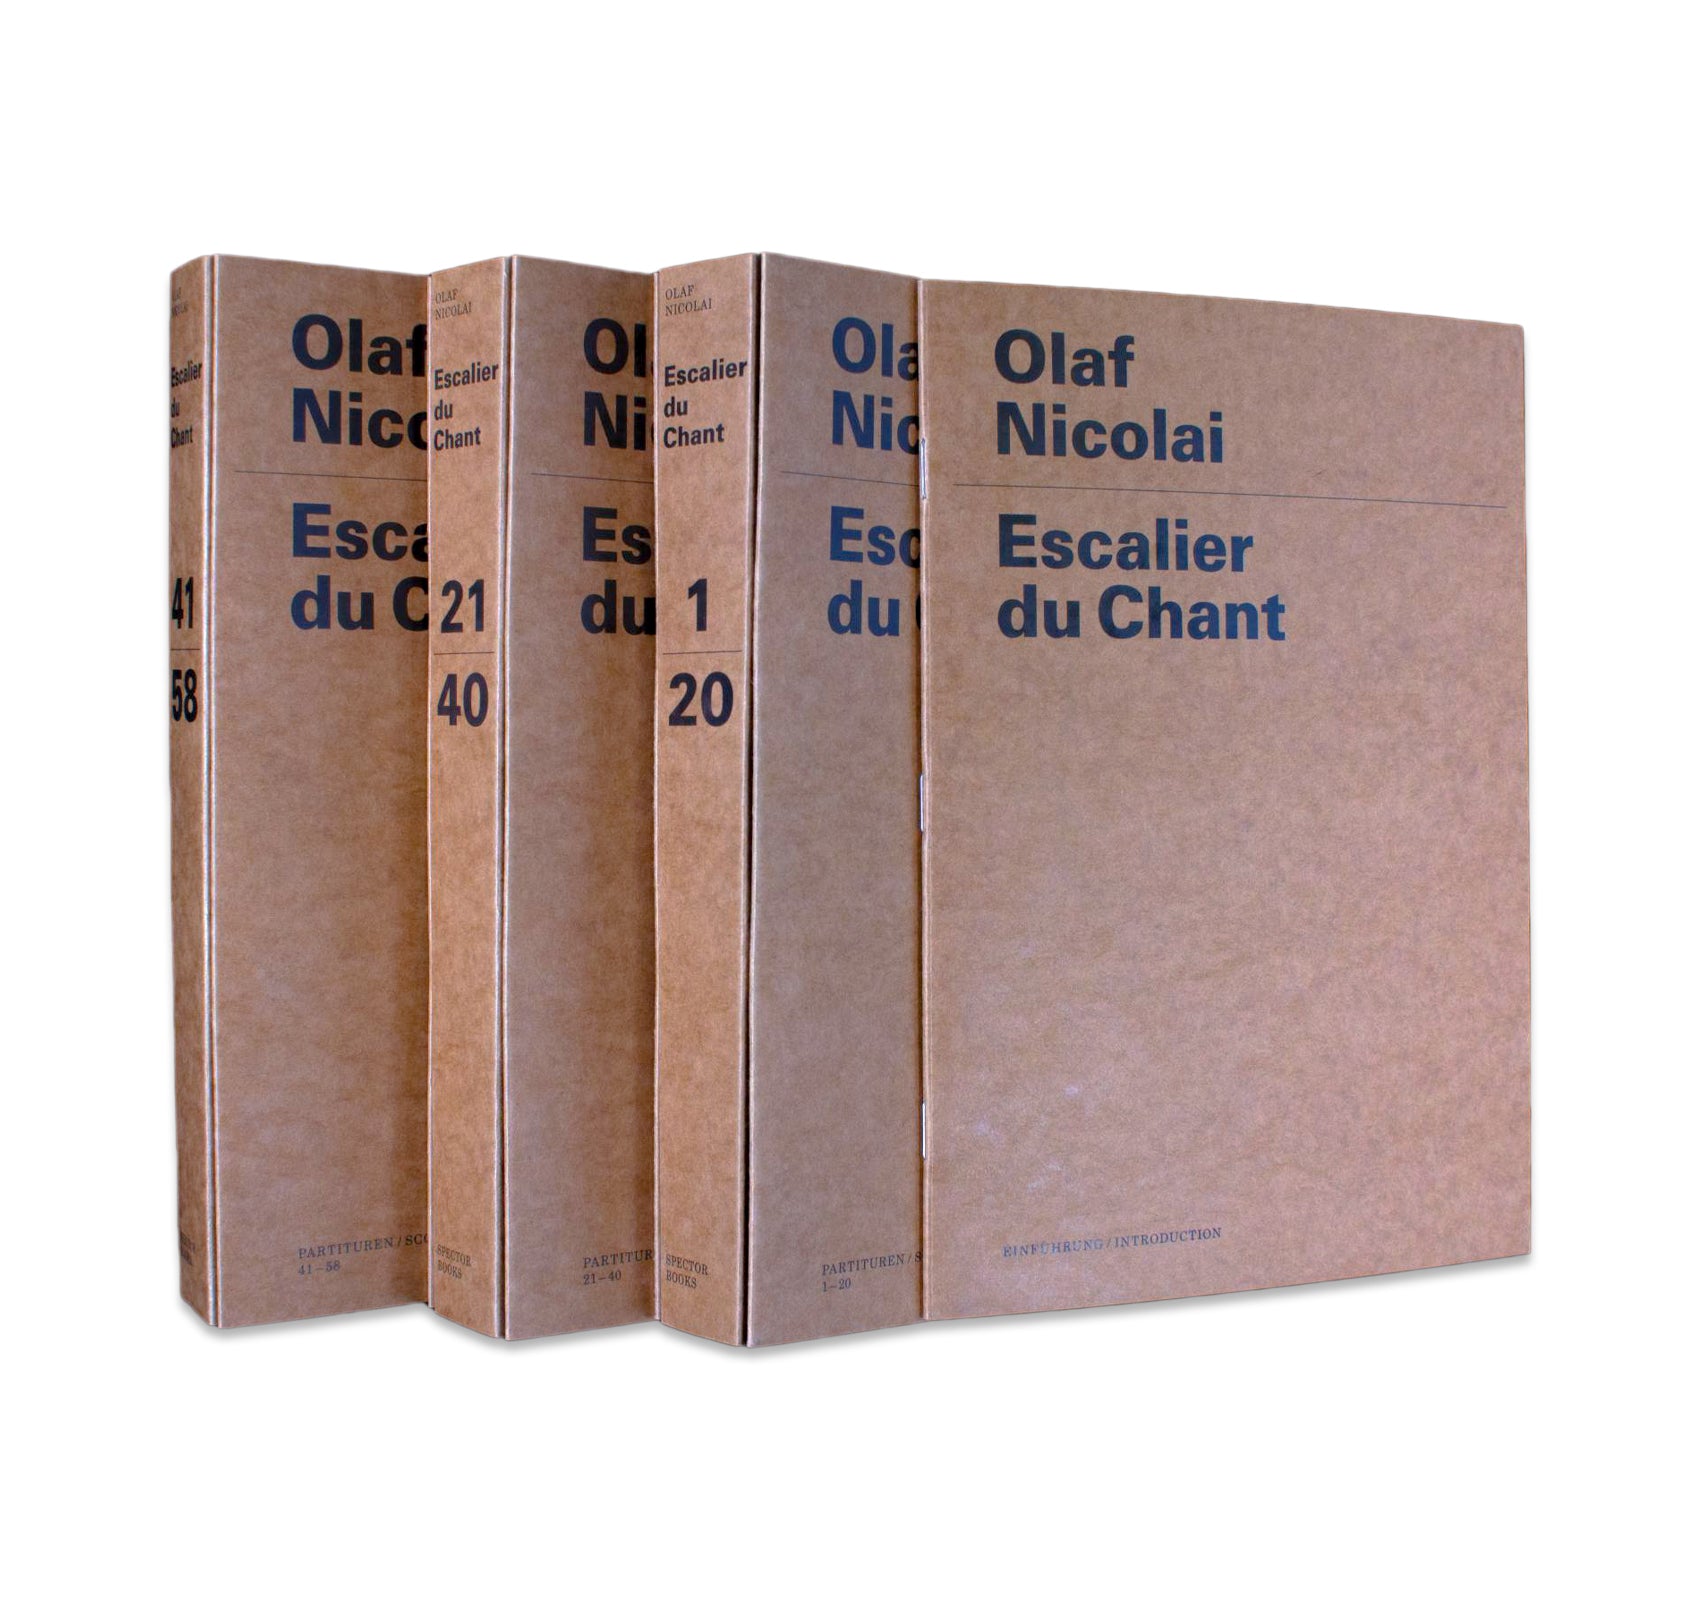 ESCALIER DU CHANT by Olaf Nicolai